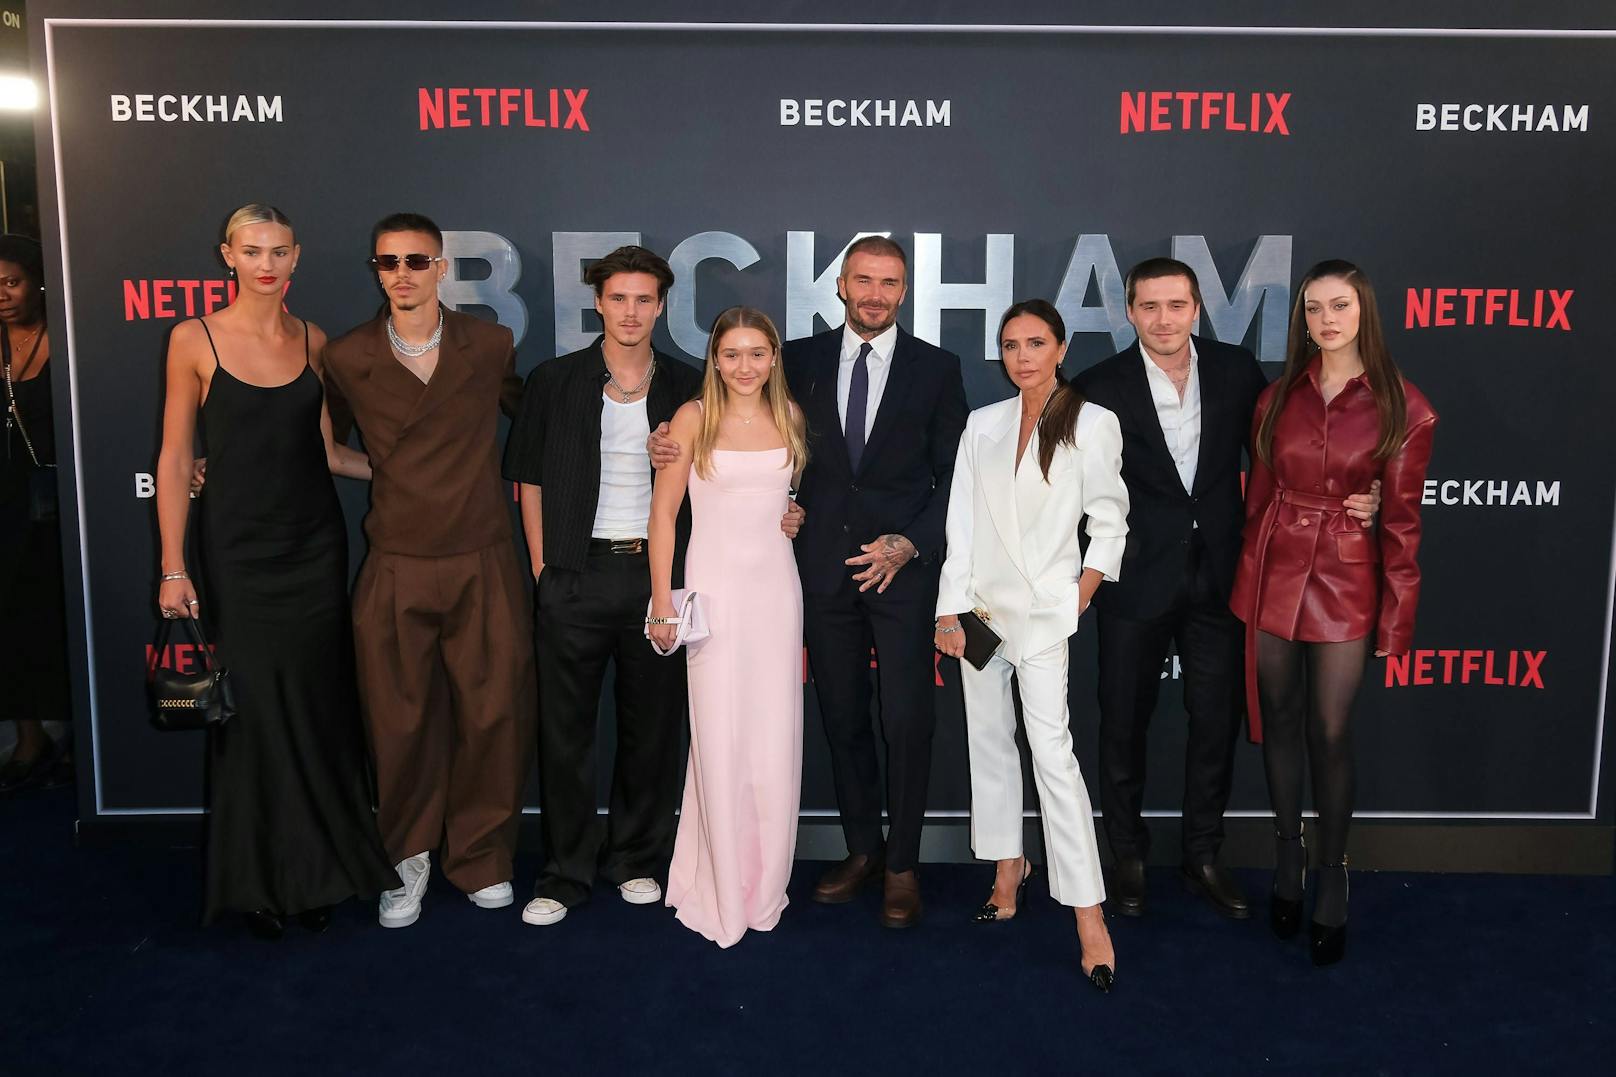 Victoria und David Beckham mit ihren vier Kindern, Brooklyn, Cruz und Romeo sowie den Lebensgefährten ihrer beiden ältesten Söhne bei der Netflix-Premiere.